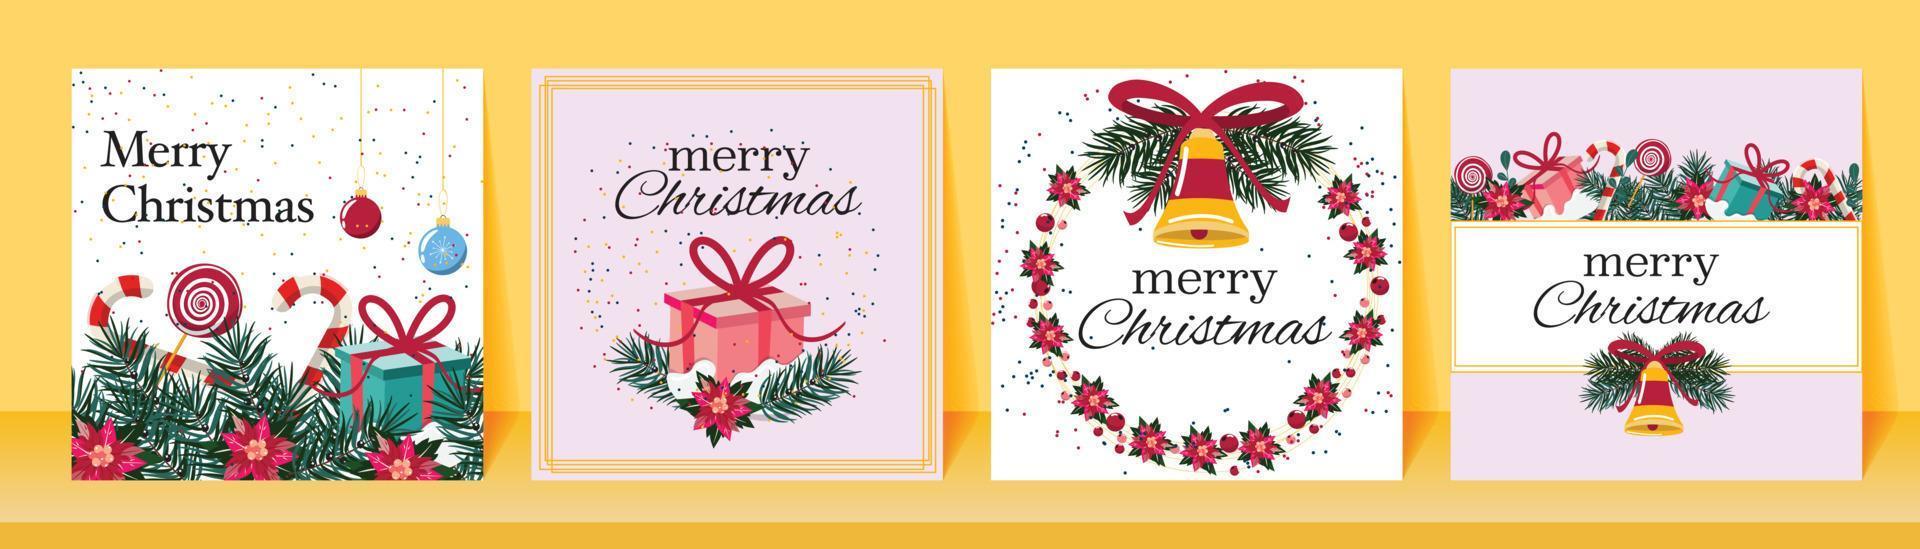 tarjetas de felicitación navideñas cuadradas con ramas de pino, dulces, campana y cajas de regalo. para pancartas, tarjetas. vector